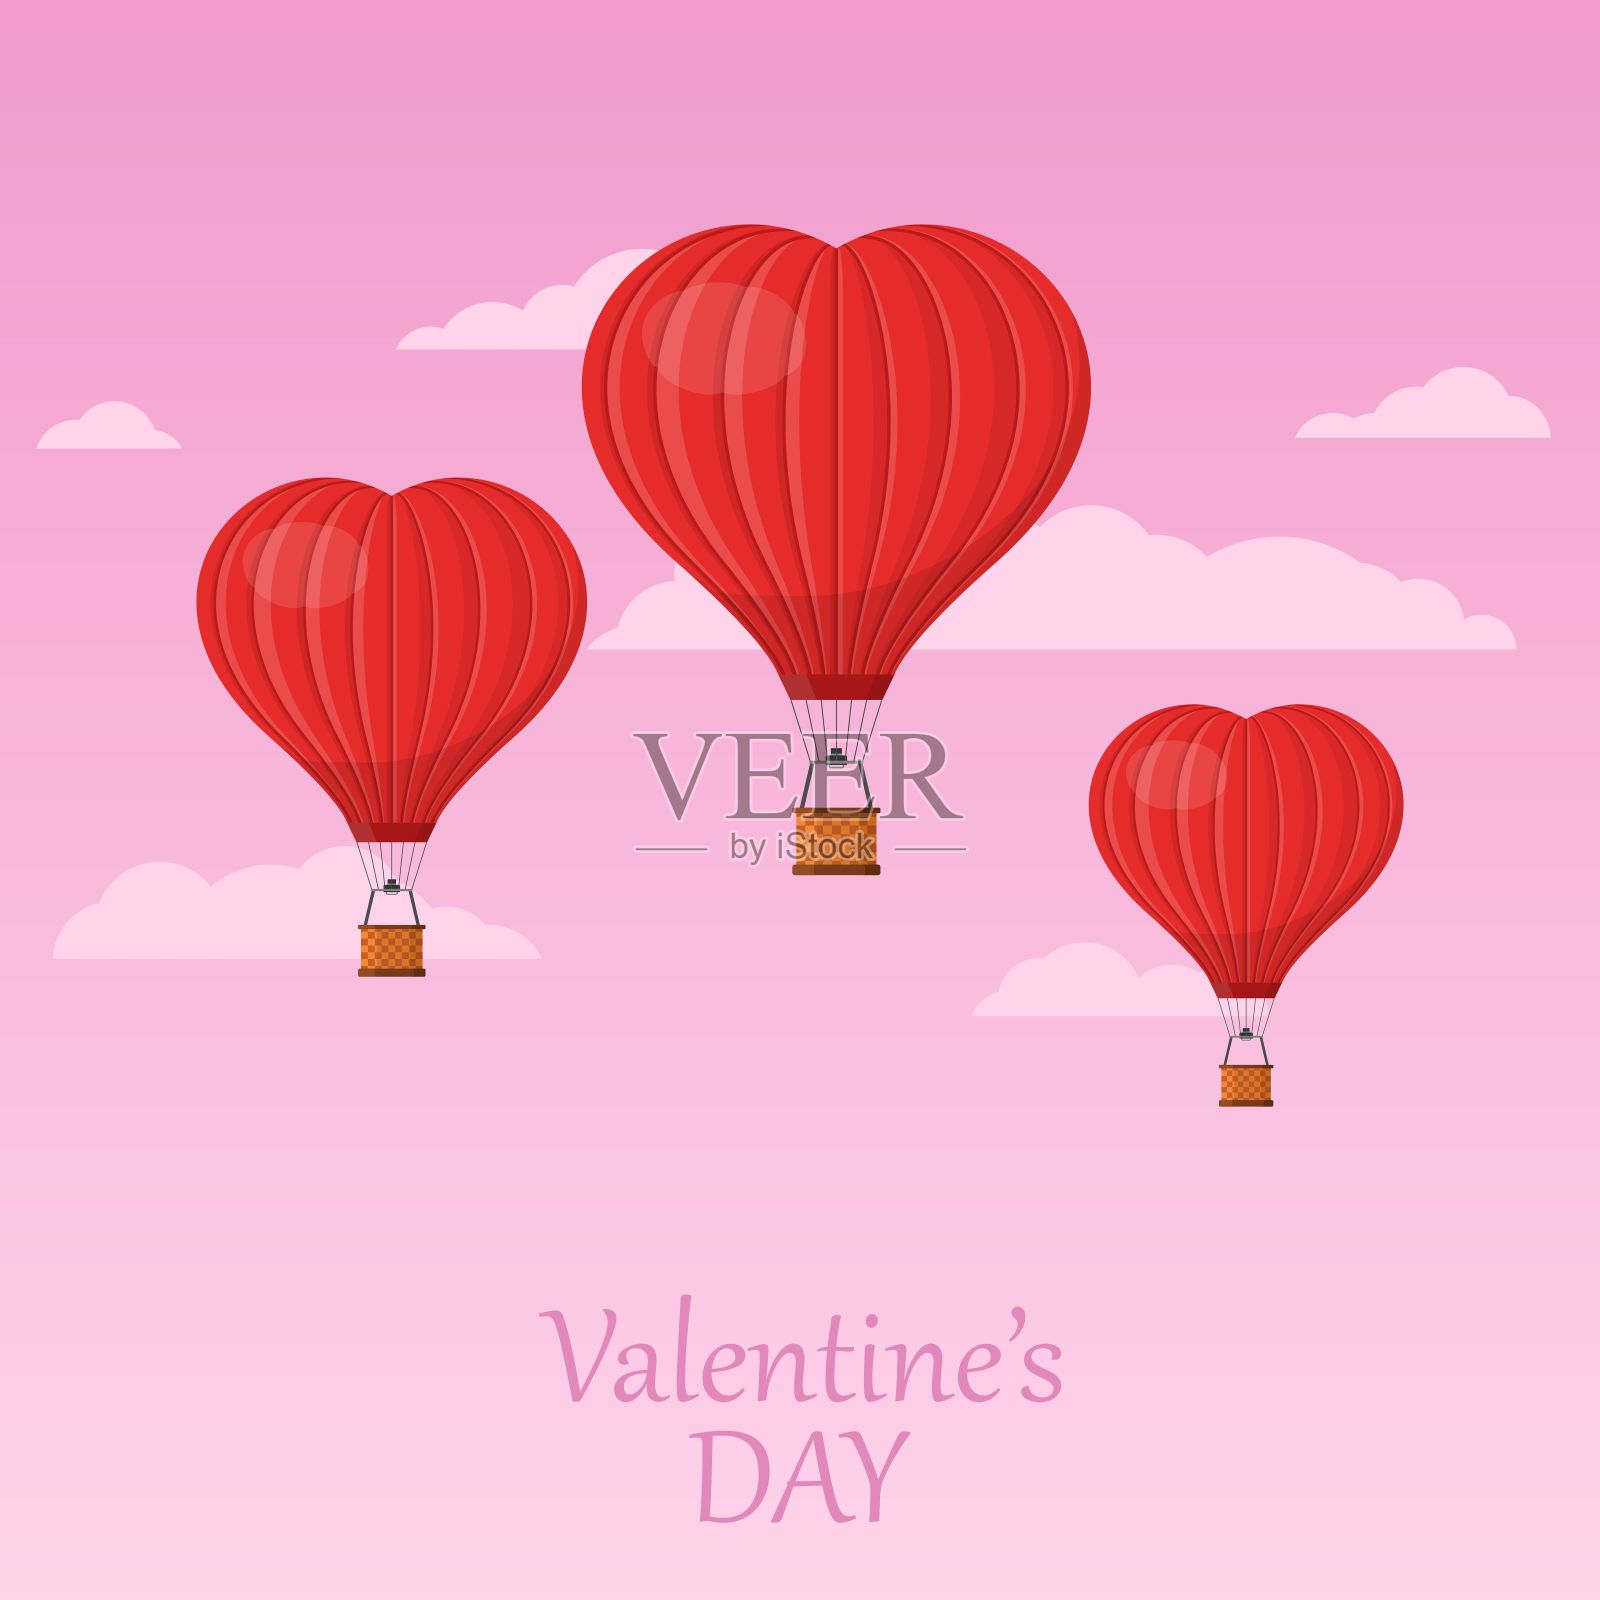 三个红心气球在粉红色的天空和云彩中飞翔。情人节贺卡。心形的热气球和篮子。插画图片素材